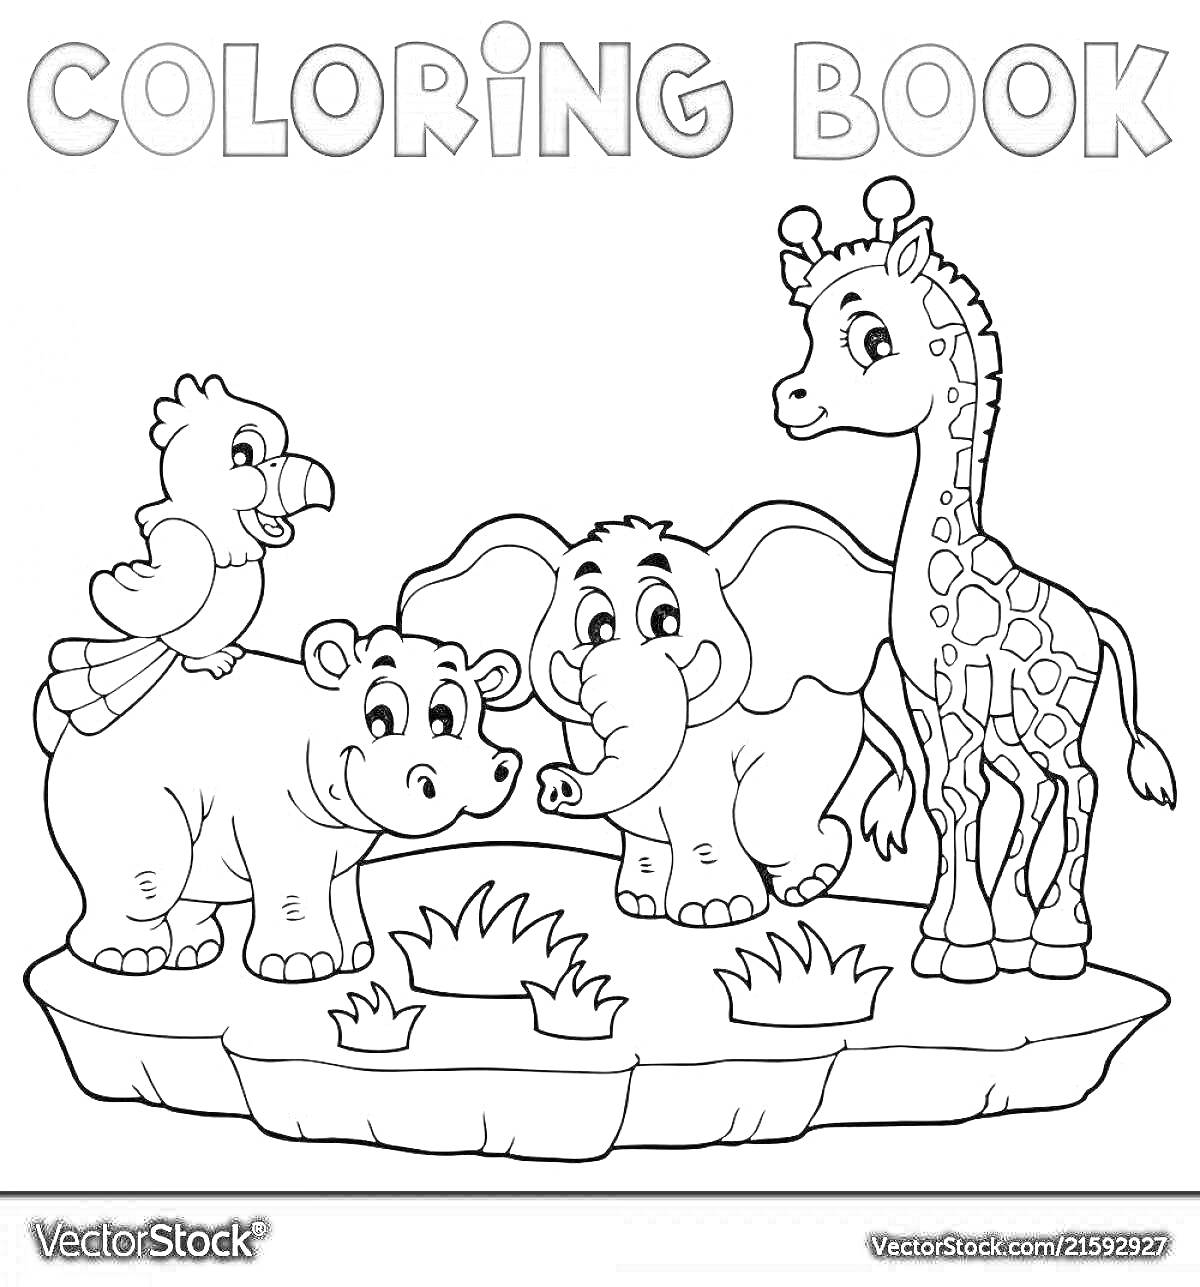 Раскраска Попугай, бегемот, слон и жираф на каменной платформе с травой